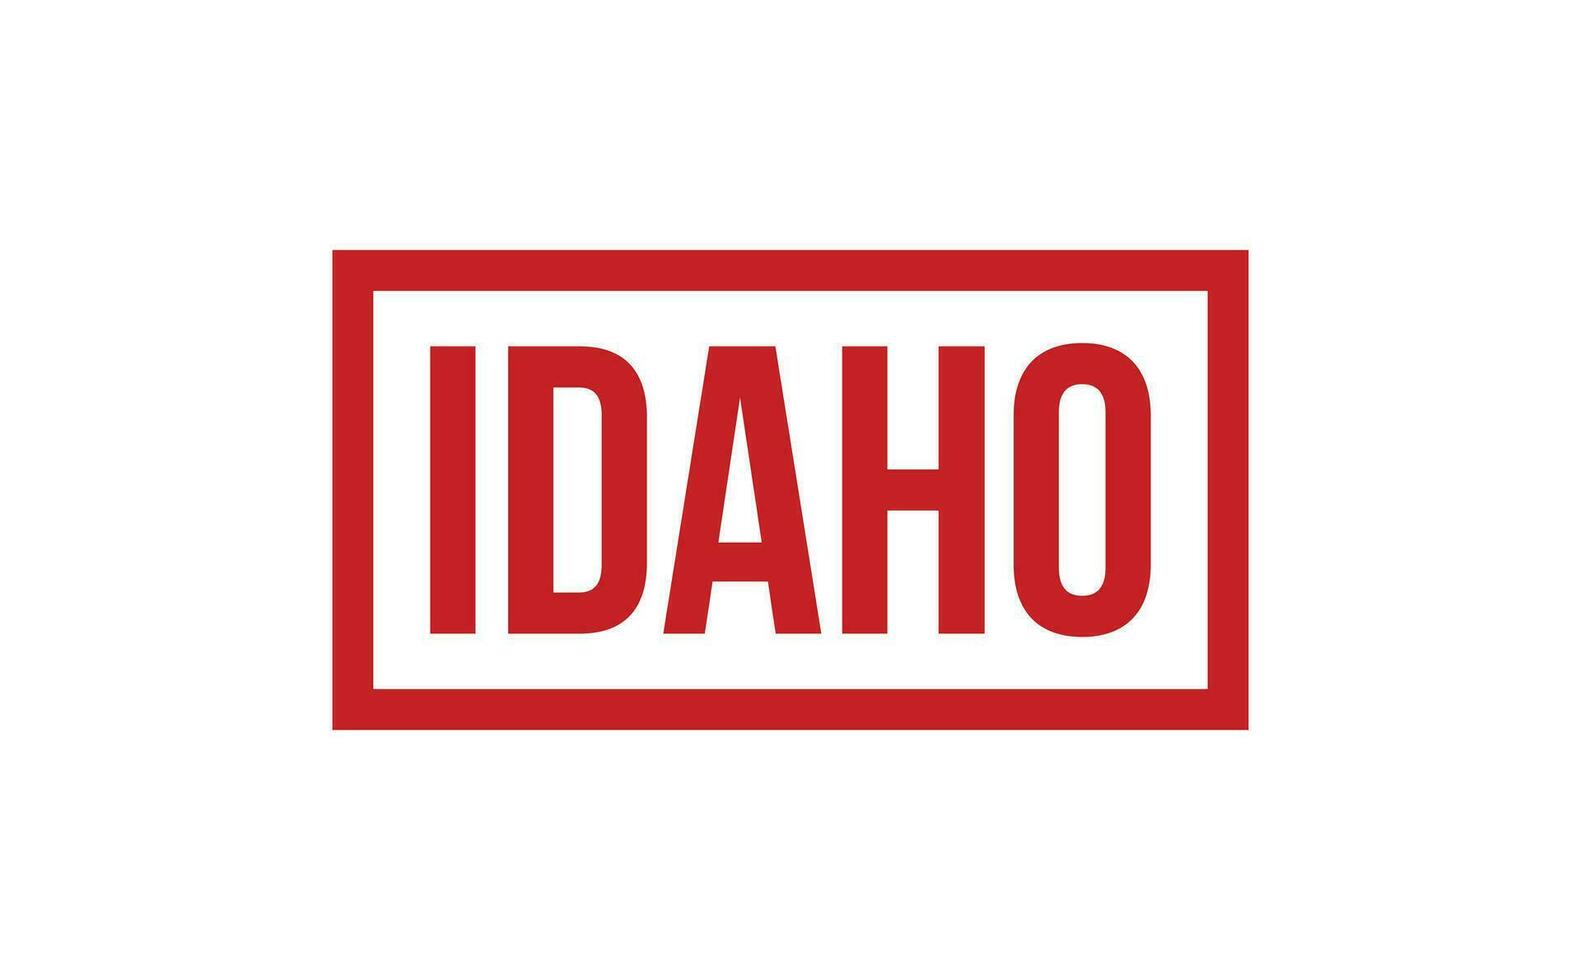 Idaho caoutchouc timbre joint vecteur